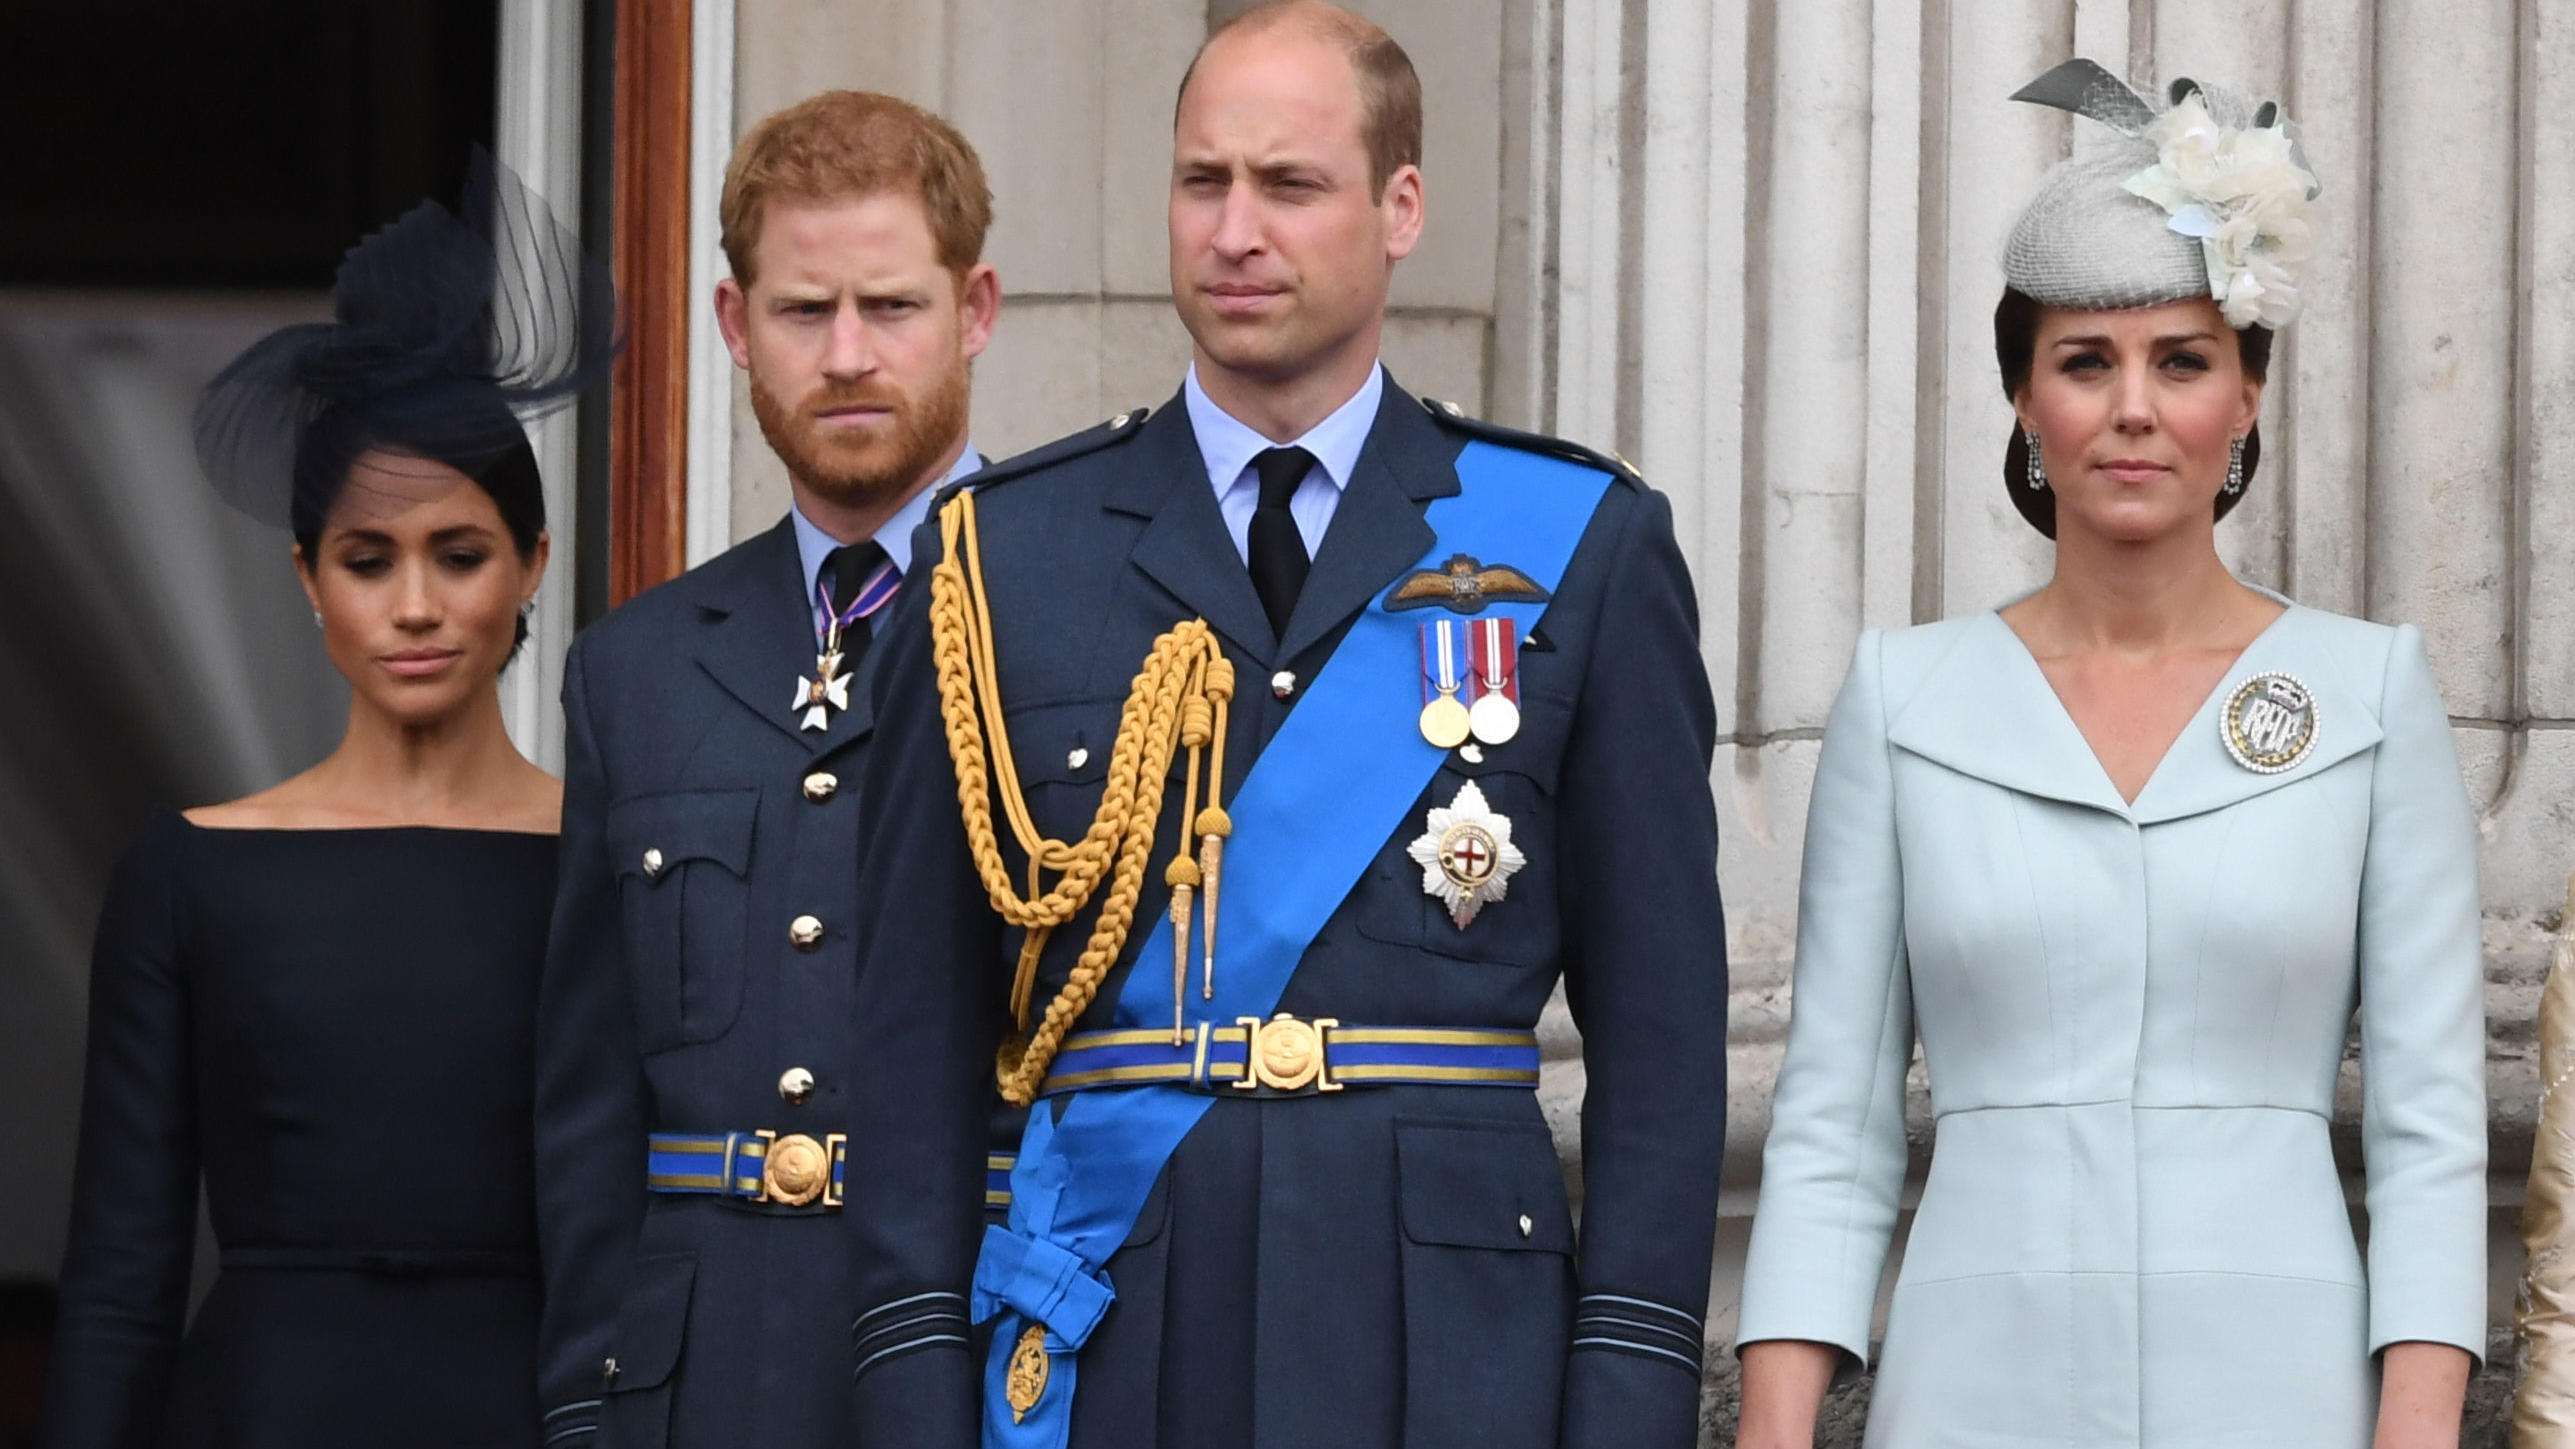 ARCHIV - 10.07.2018, Großbritannien, London: Herzogin Meghan (l-r), Prinz Harry, Prinz William und Herzogin Kate stehen auf dem Balkon des Buckingham-Palasts um eine Luftparade zum 100. Jahrestag der britischen Luftwaffe, die Royal Air Force (RAF), z